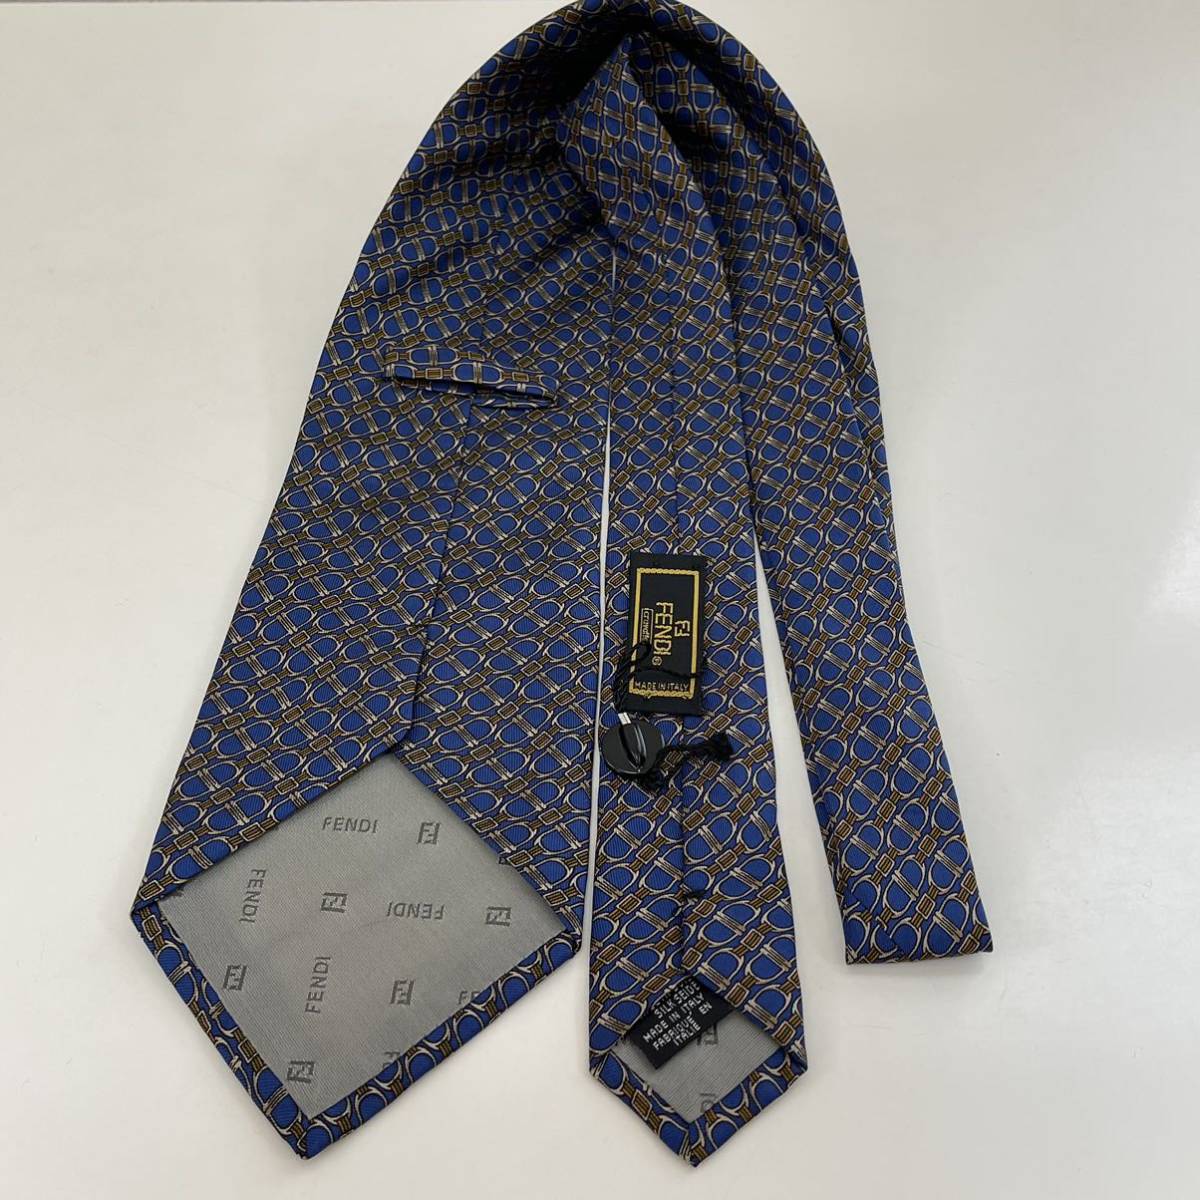 FENDI( Fendi ) blue necktie new goods unused tag attaching 